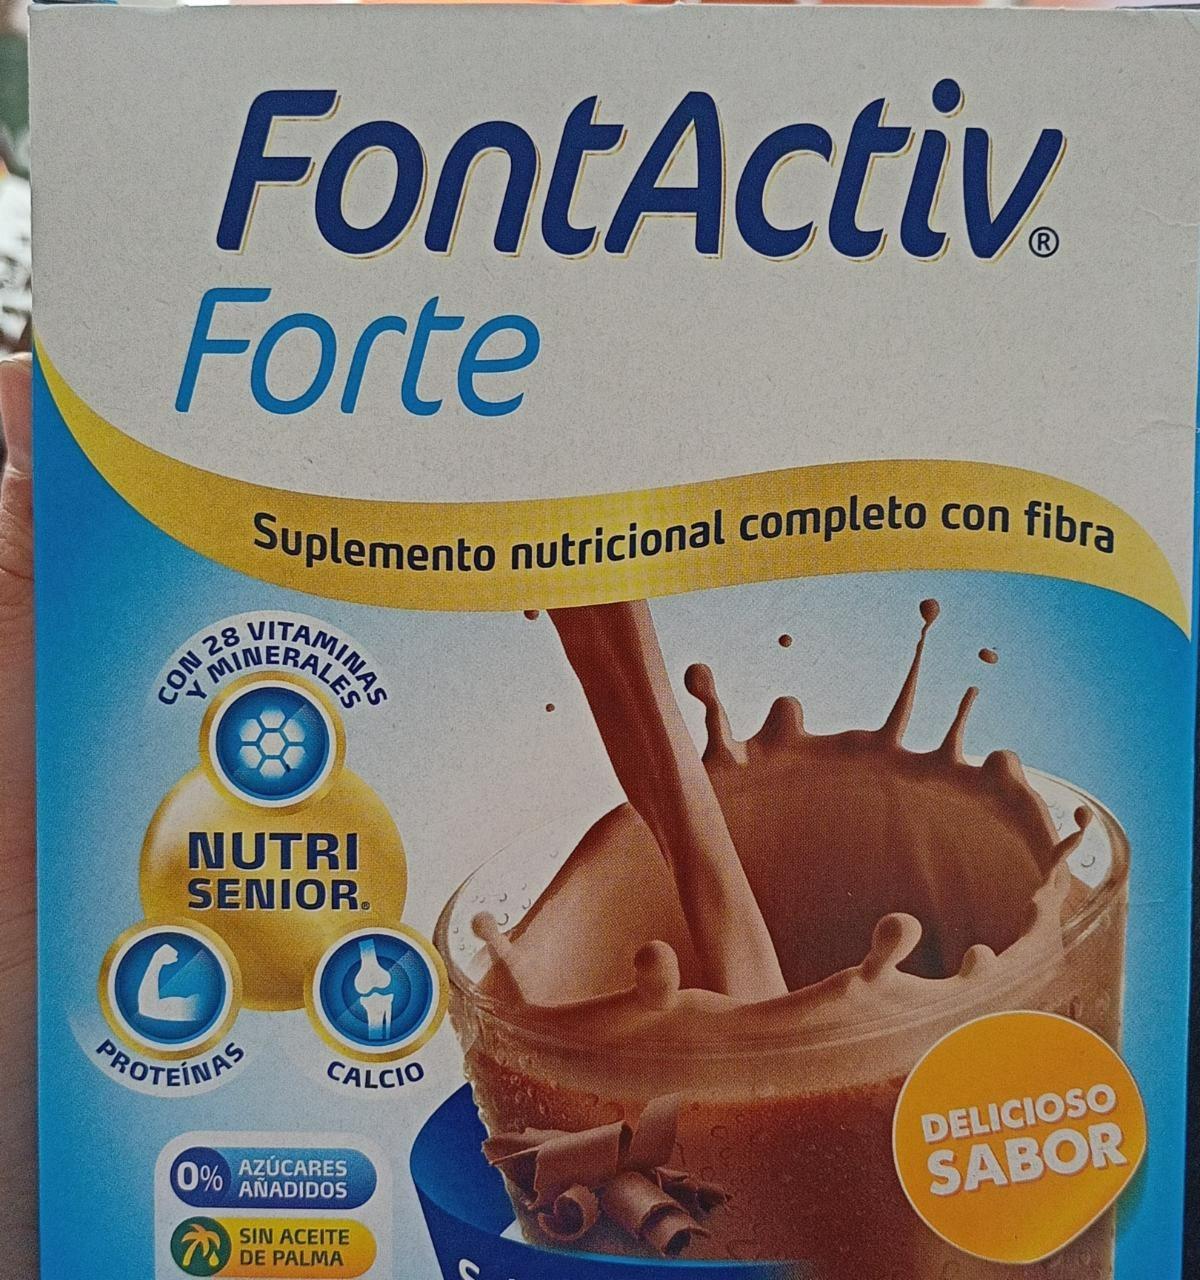 Fotografie - Forte Delicioso sabor Fontactiv